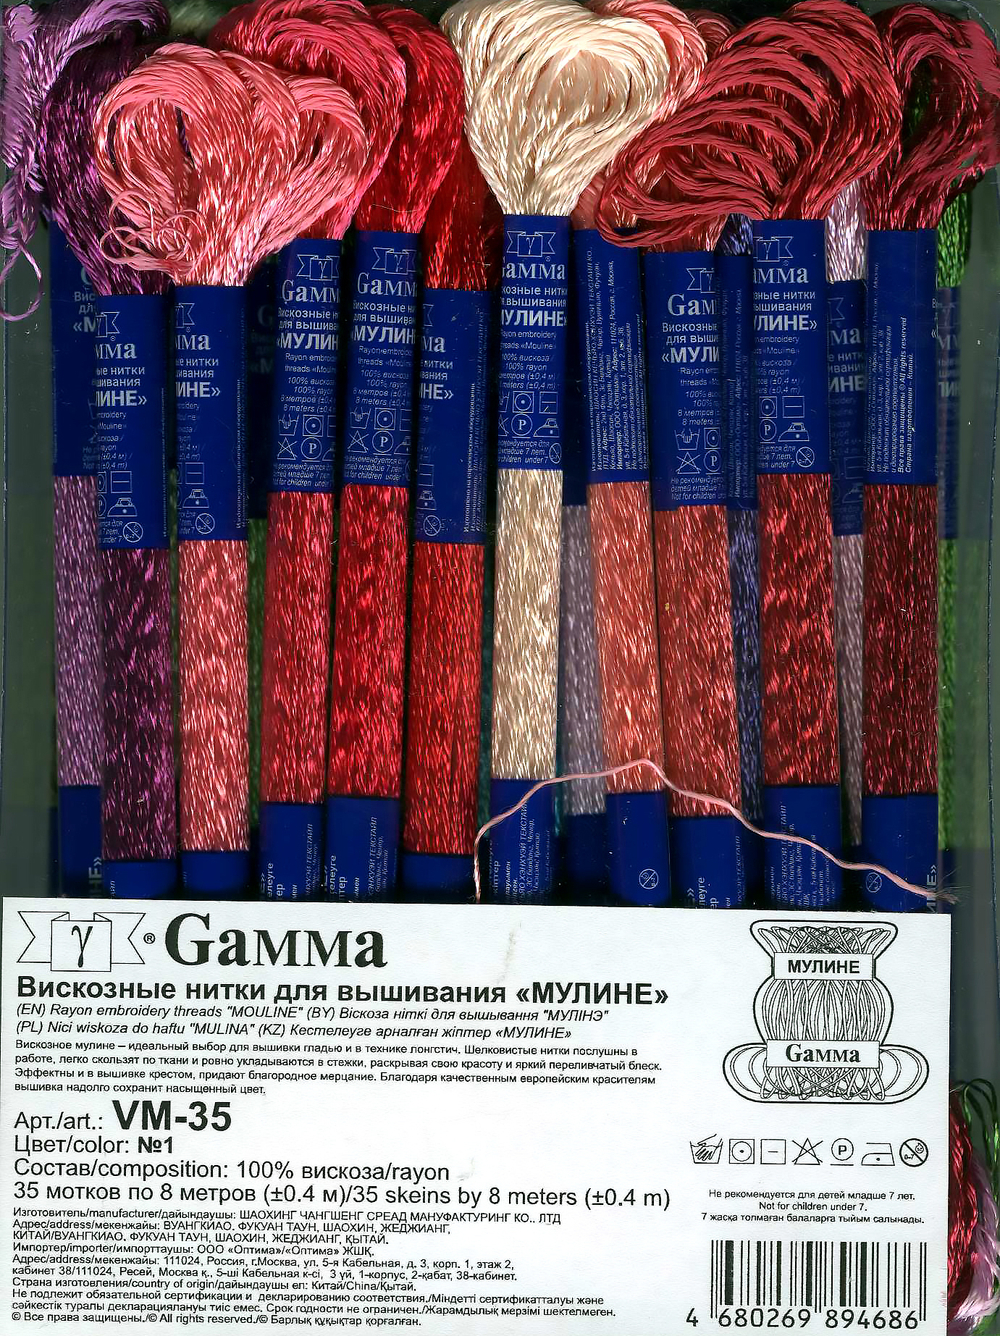 Нитки для вышивания "Gamma" набор мулине VM-35 100% вискоза 35 x 8 м №01 Цветочная поляна